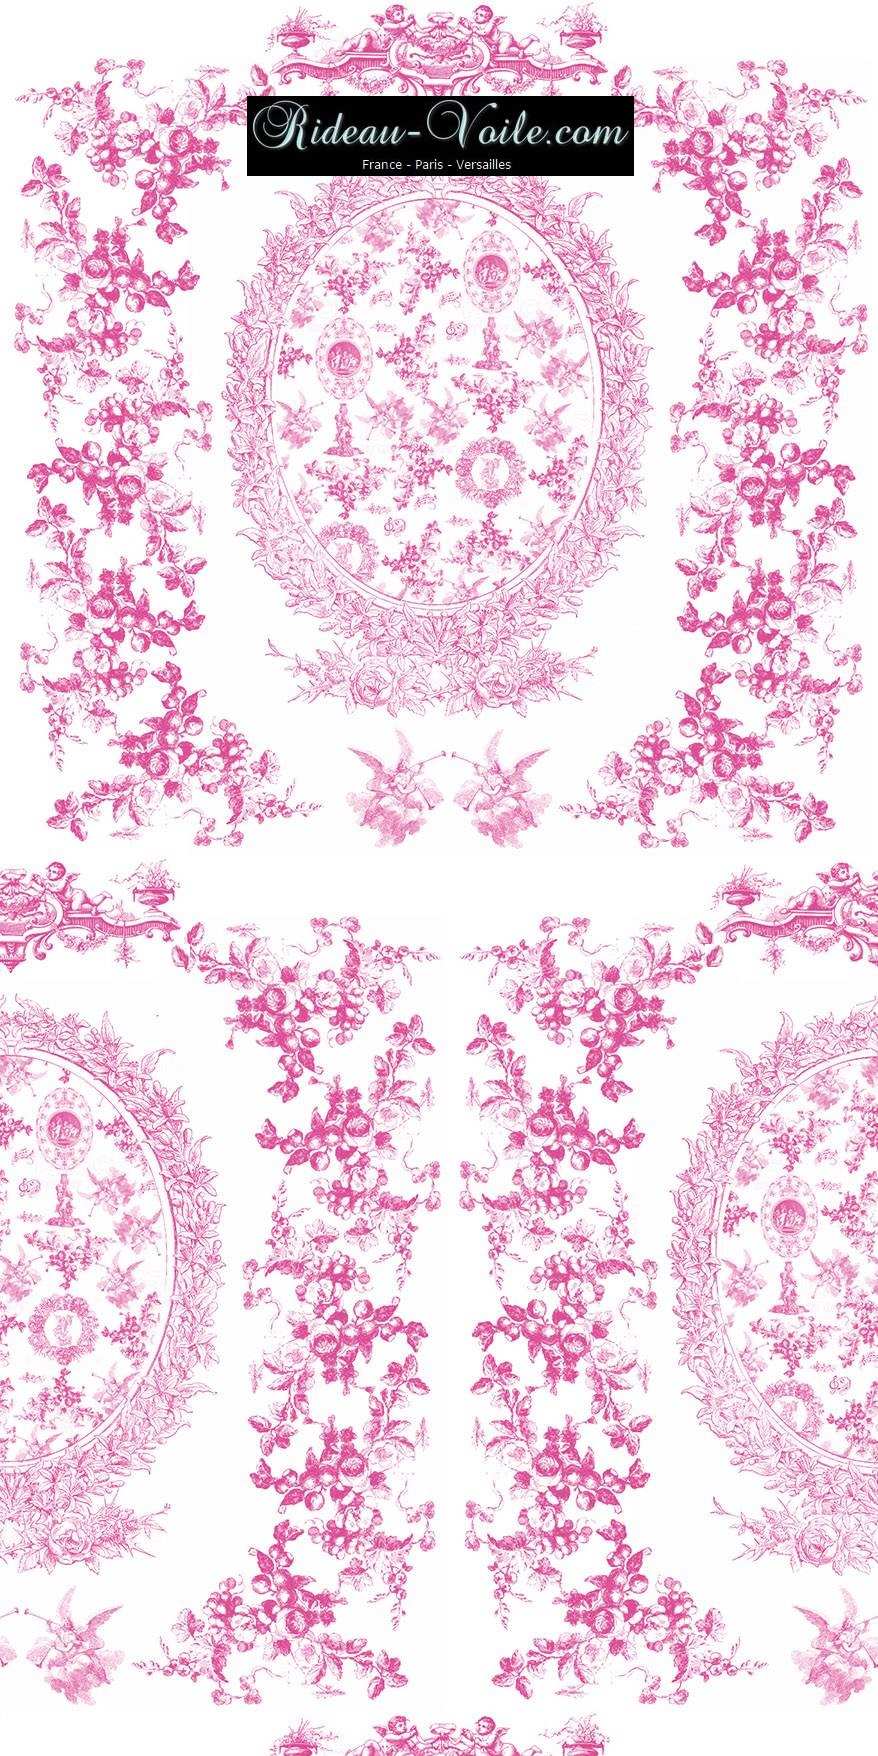 rose fushia pink toile de jouy au mètre tissu Toile ameublement tapisserie textile agencement Paris Versailles haut de gamme french fabric meter tapestry upholstery home pattern  style Empire Yvelines motif imprimé